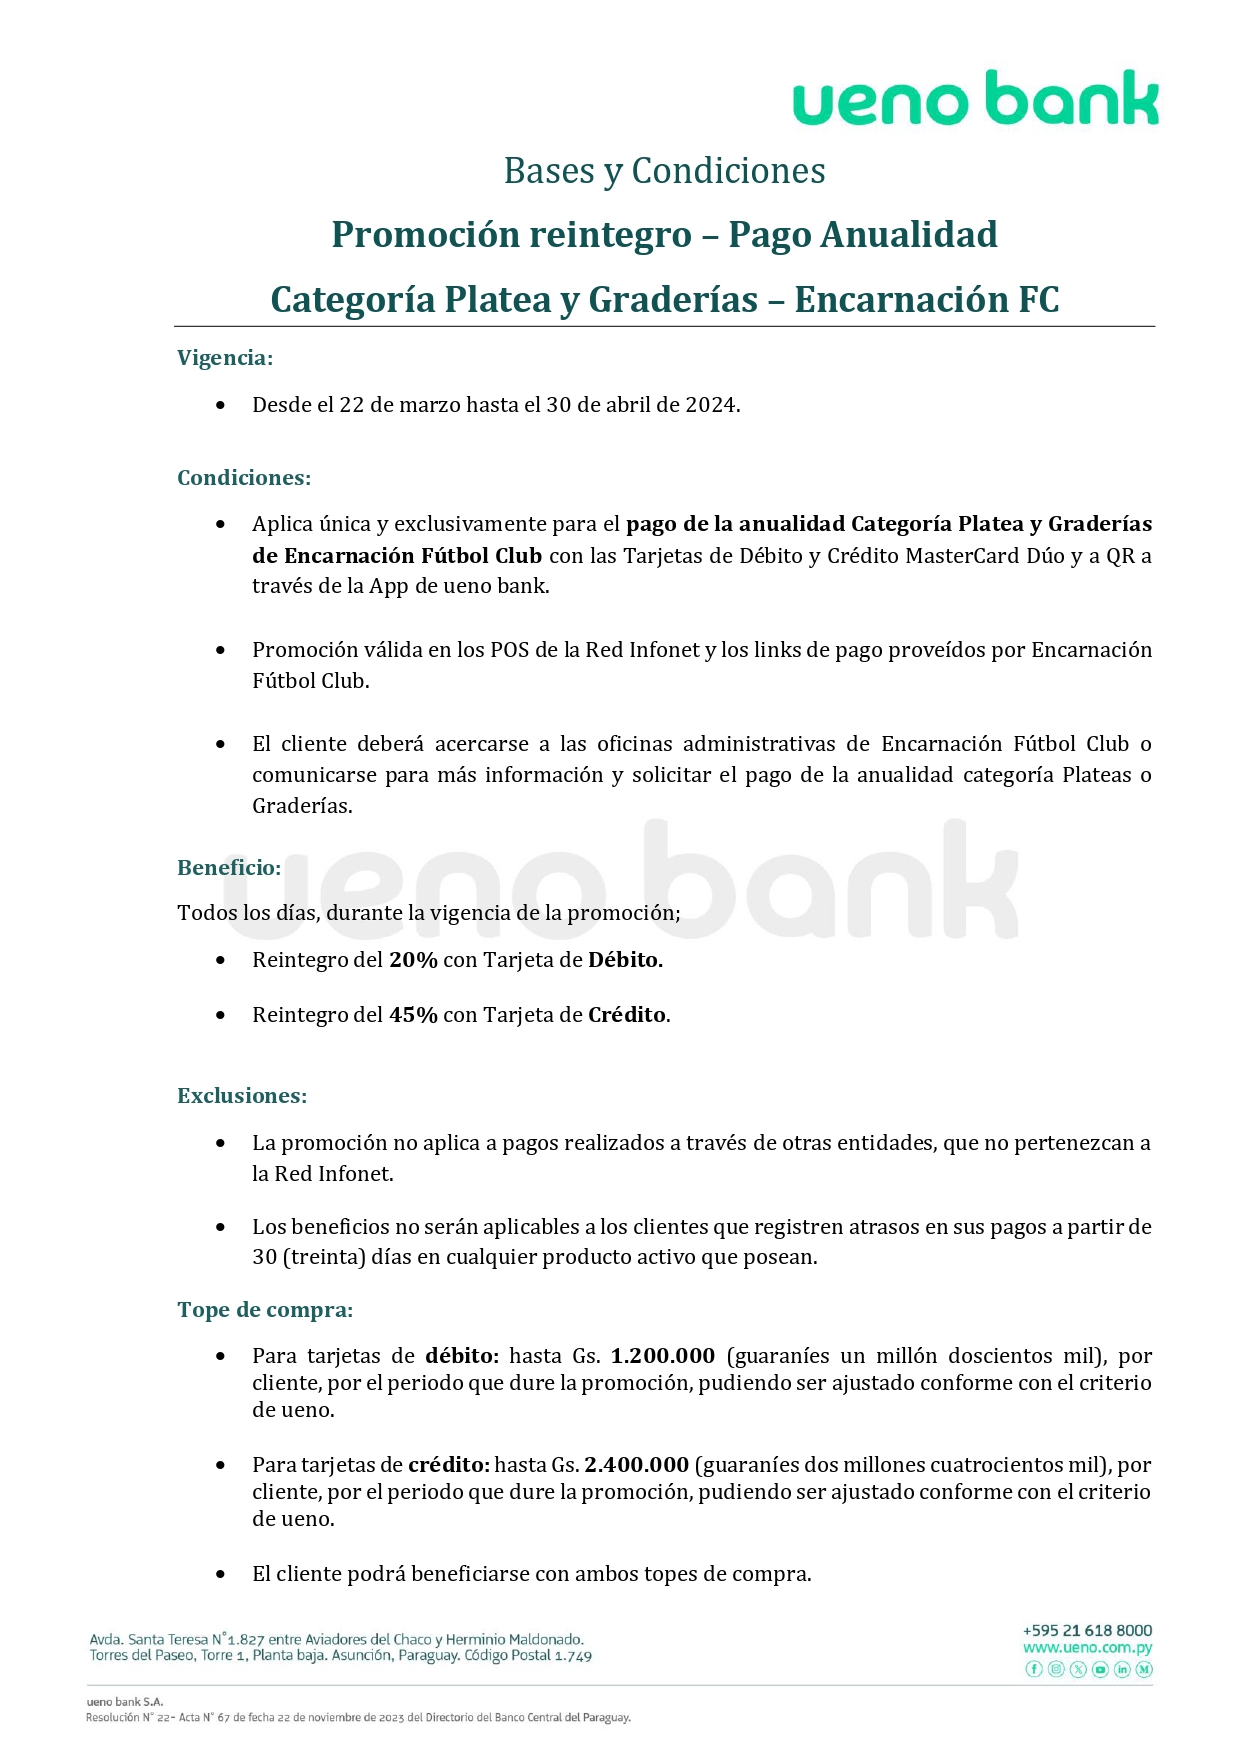 ByC - Pago de Anualidad Encarnación FC Categoría Platea y Graderías (2)_page-0001.jpg